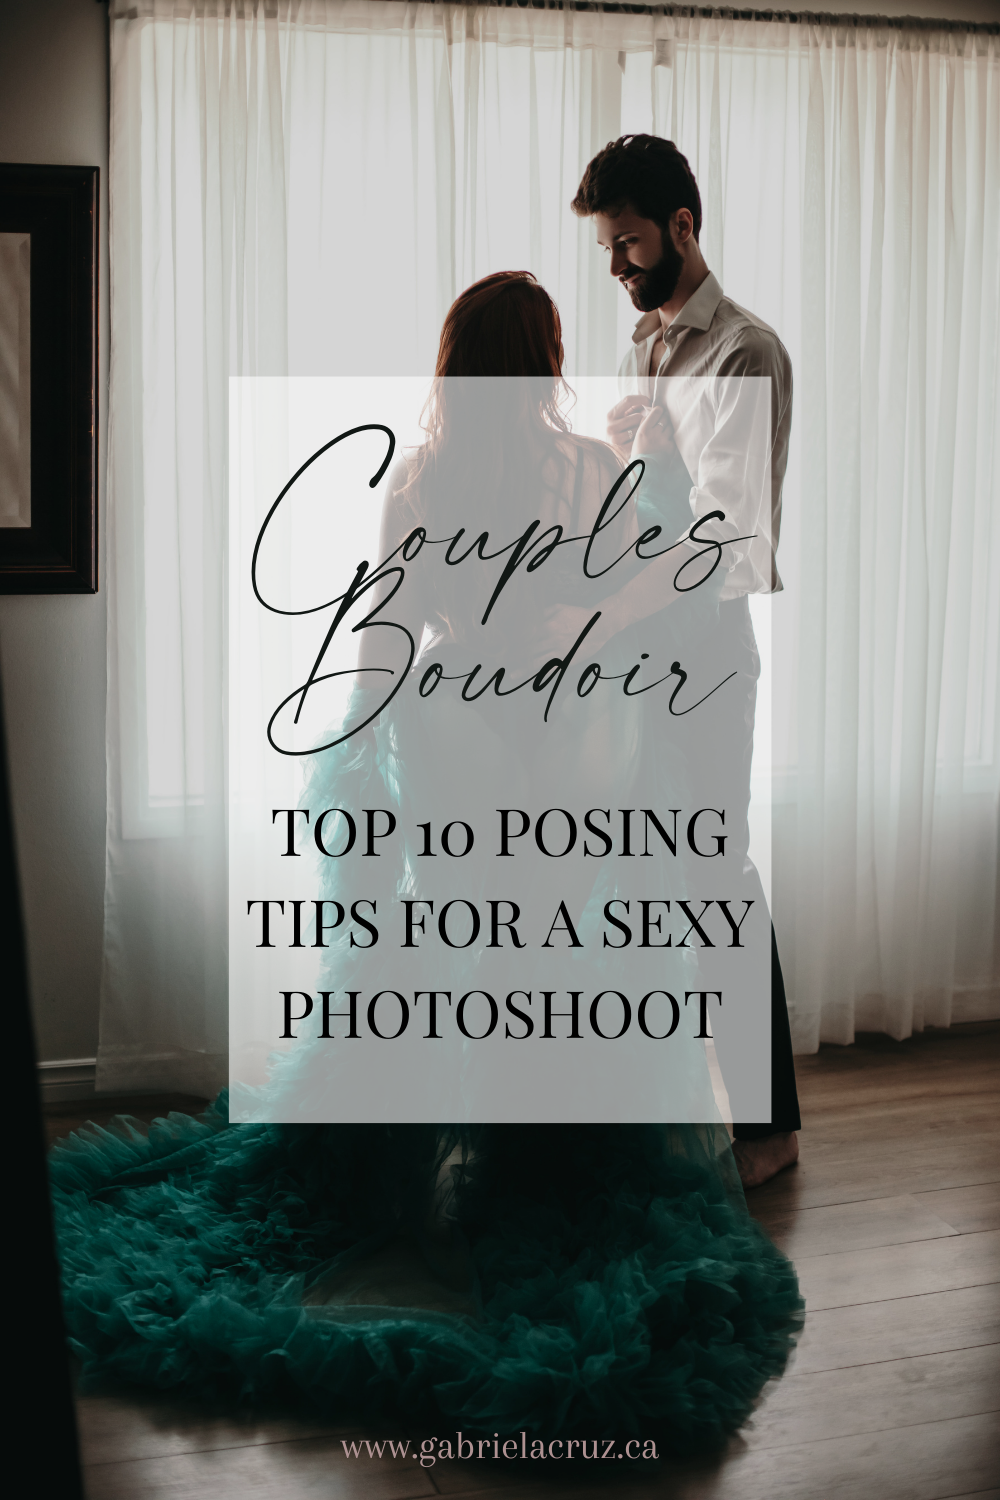 Gabriela Cruz Boudoir Photography shares their top 10 tips for making a SEXY couples boudoir photoshoot | Boudoir Photography | Couples Boudoir | Edmonton Boudoir | Boudoir Posing